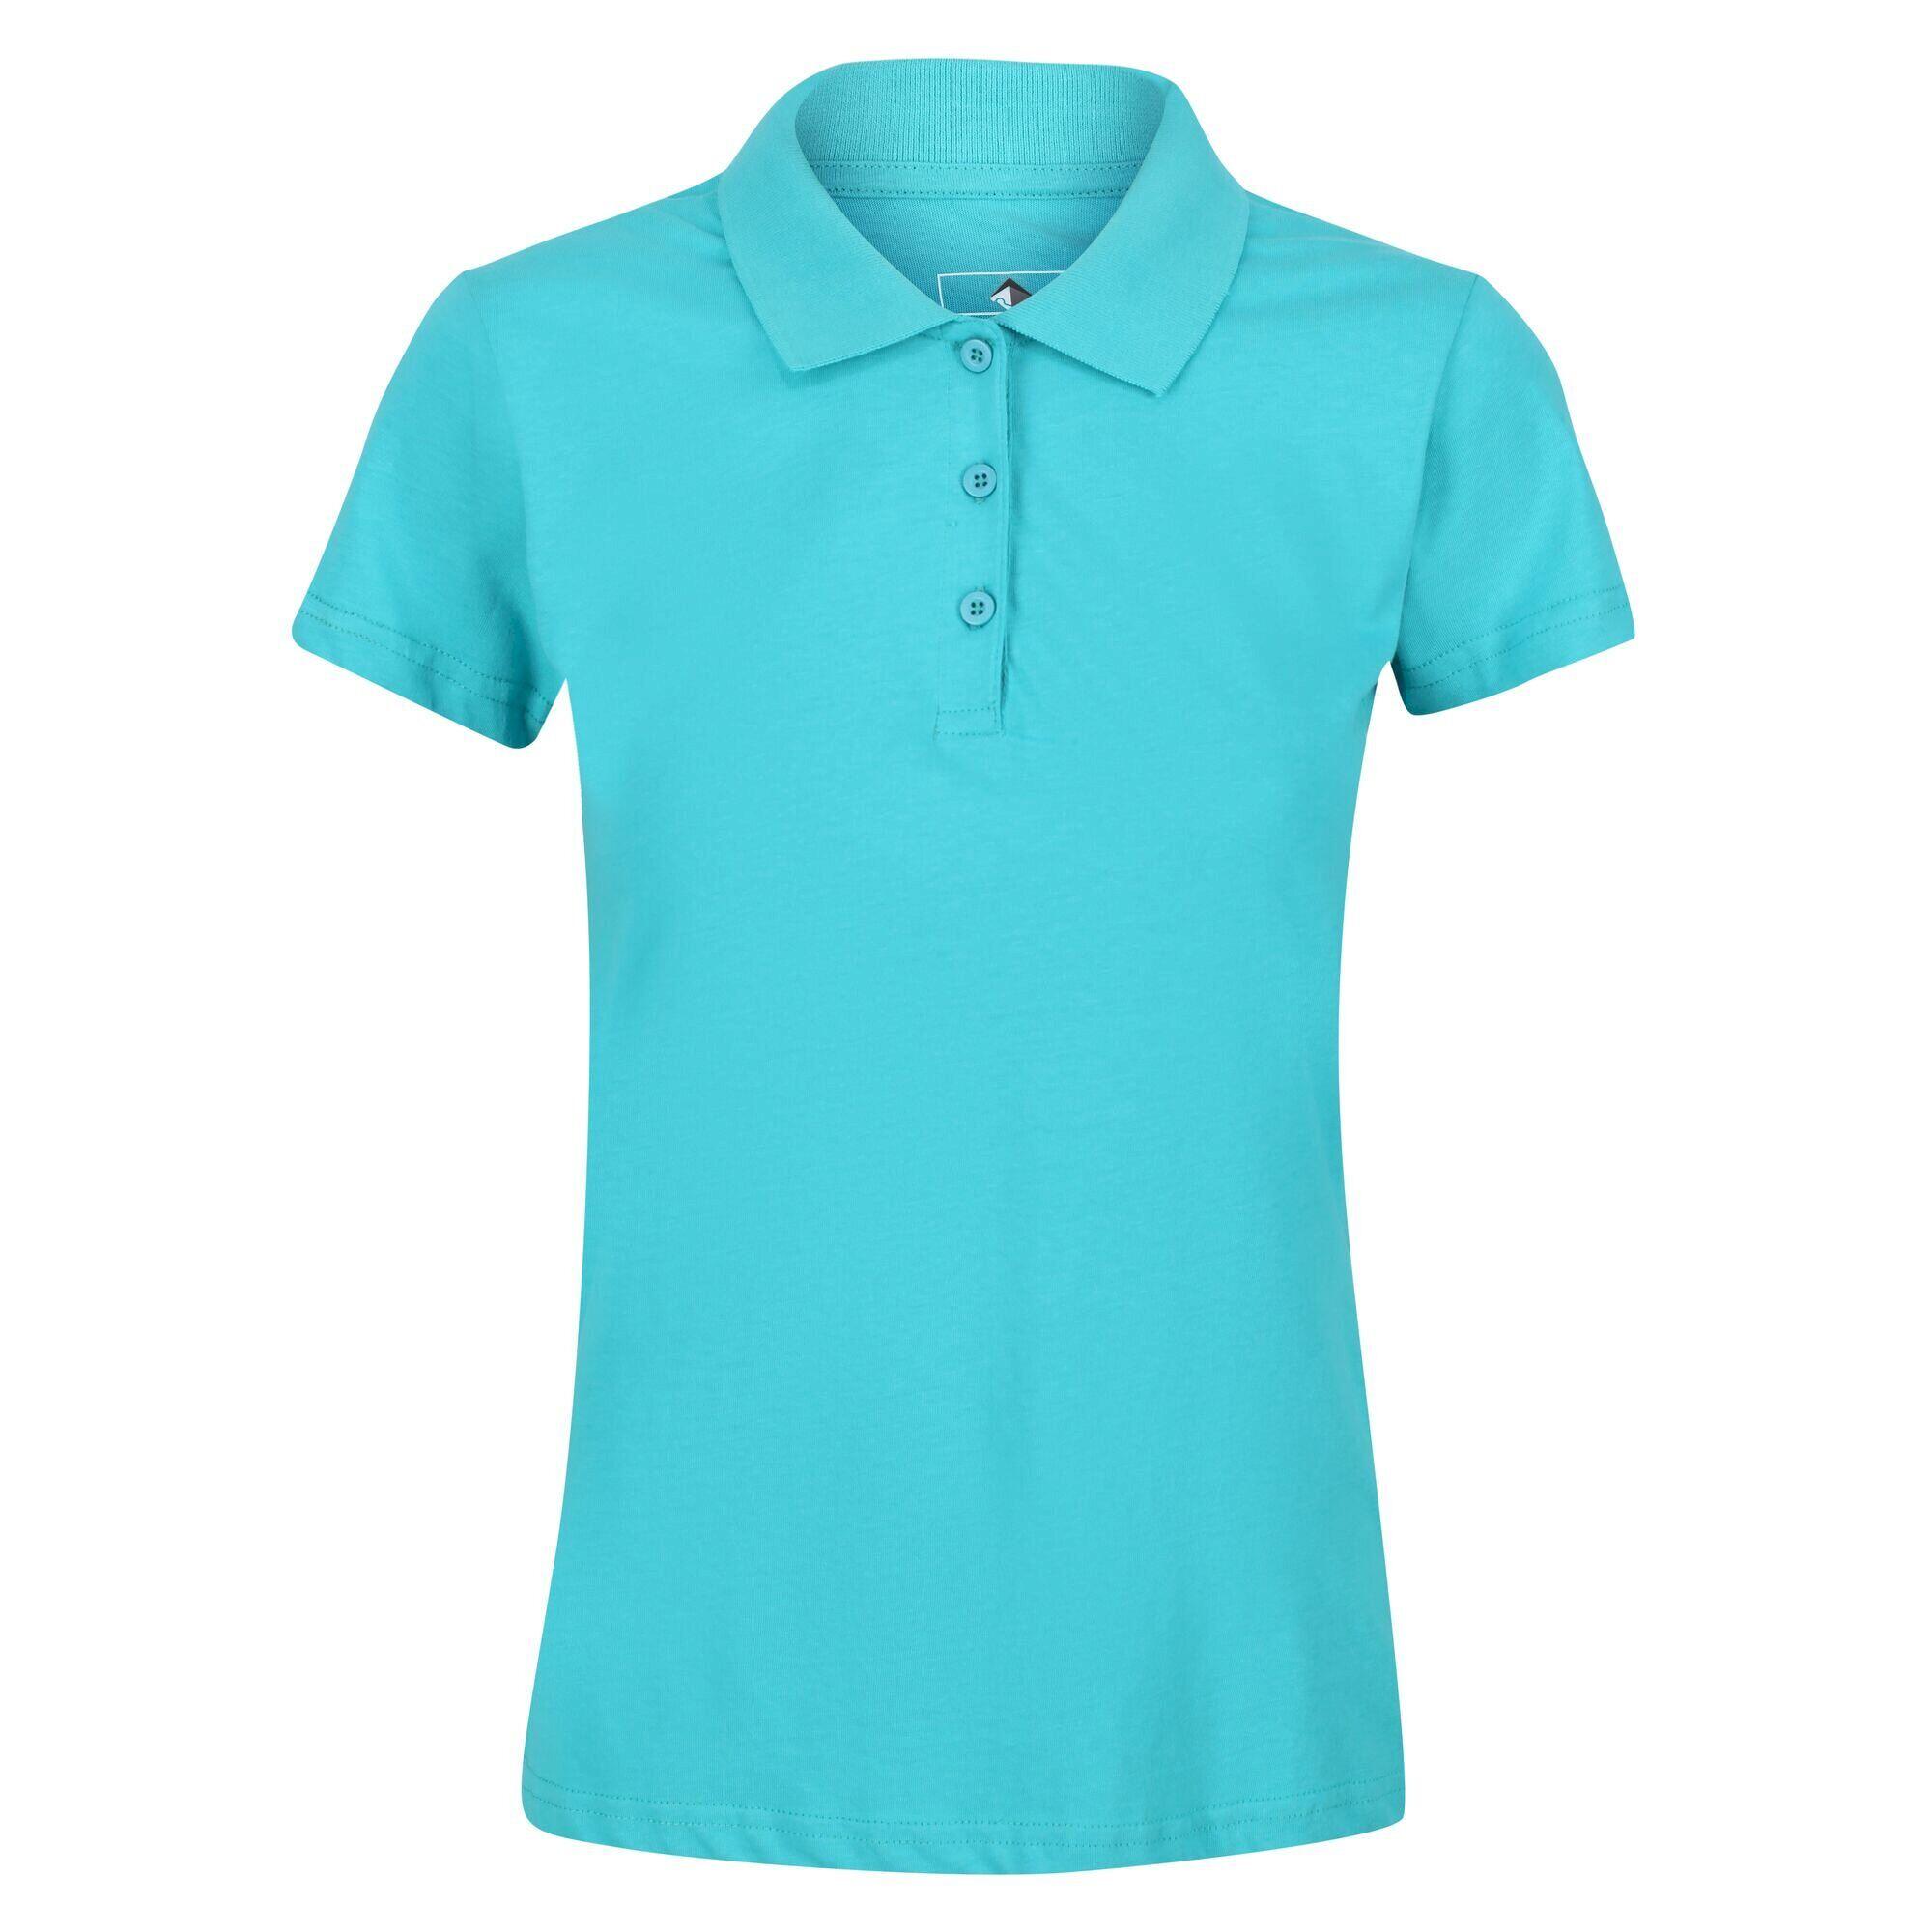 REGATTA Womens/Ladies Sinton Polo Shirt (Turquoise)